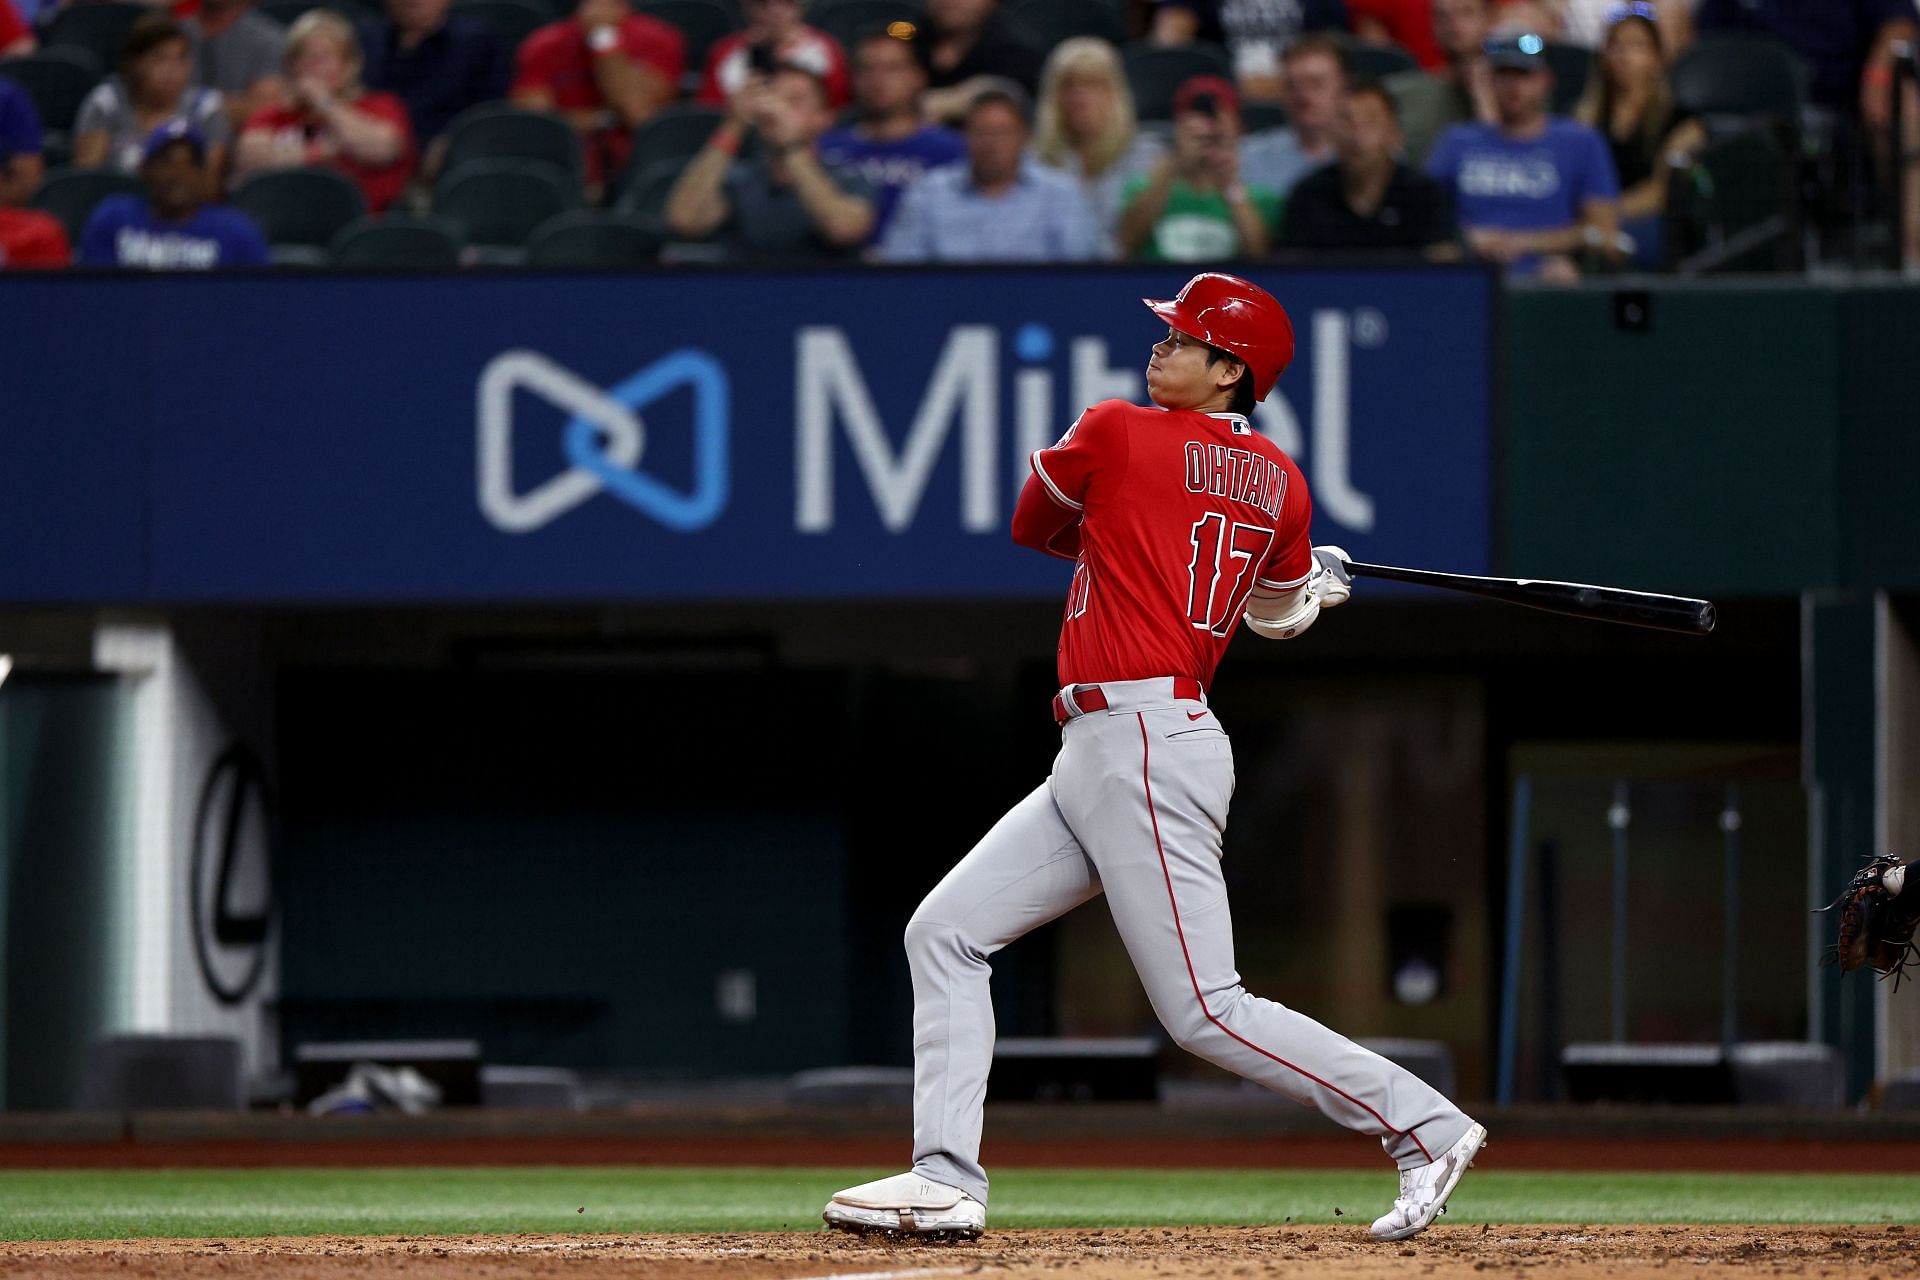 Ohtani's Baseball Skills Help His Sponsors Outperform Market - Bloomberg